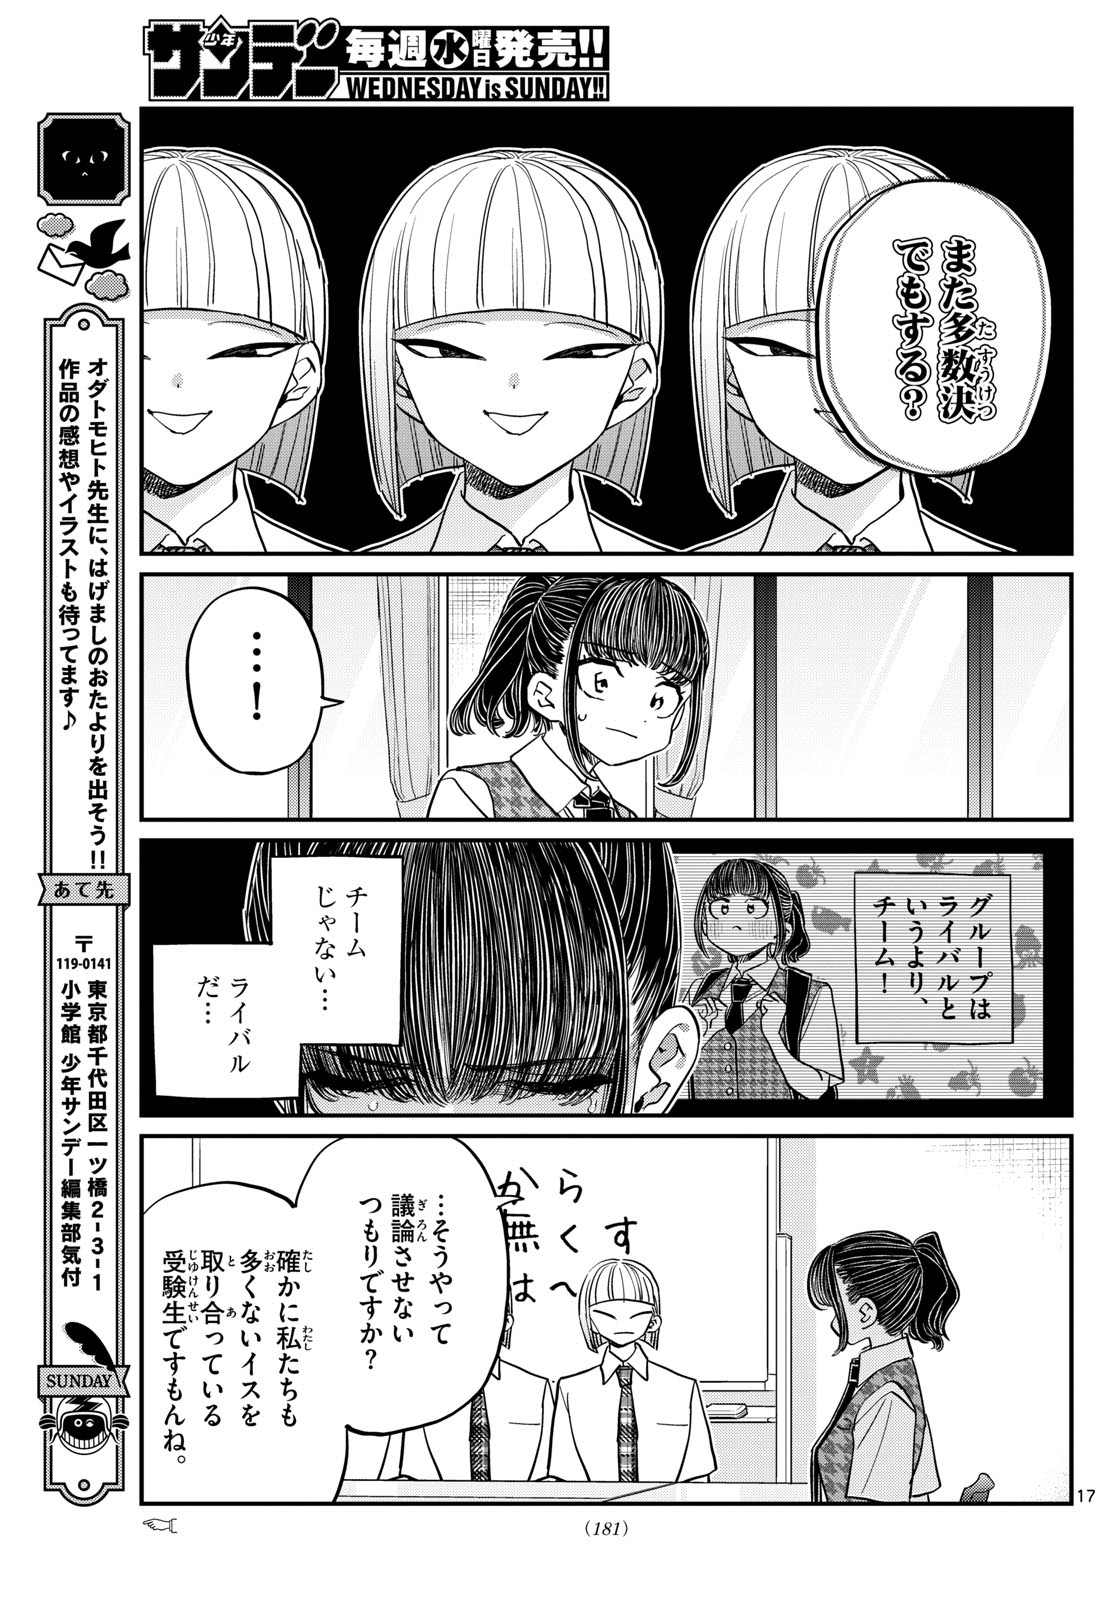 Komi-san wa Komyushou Desu - Chapter 438 - Page 8